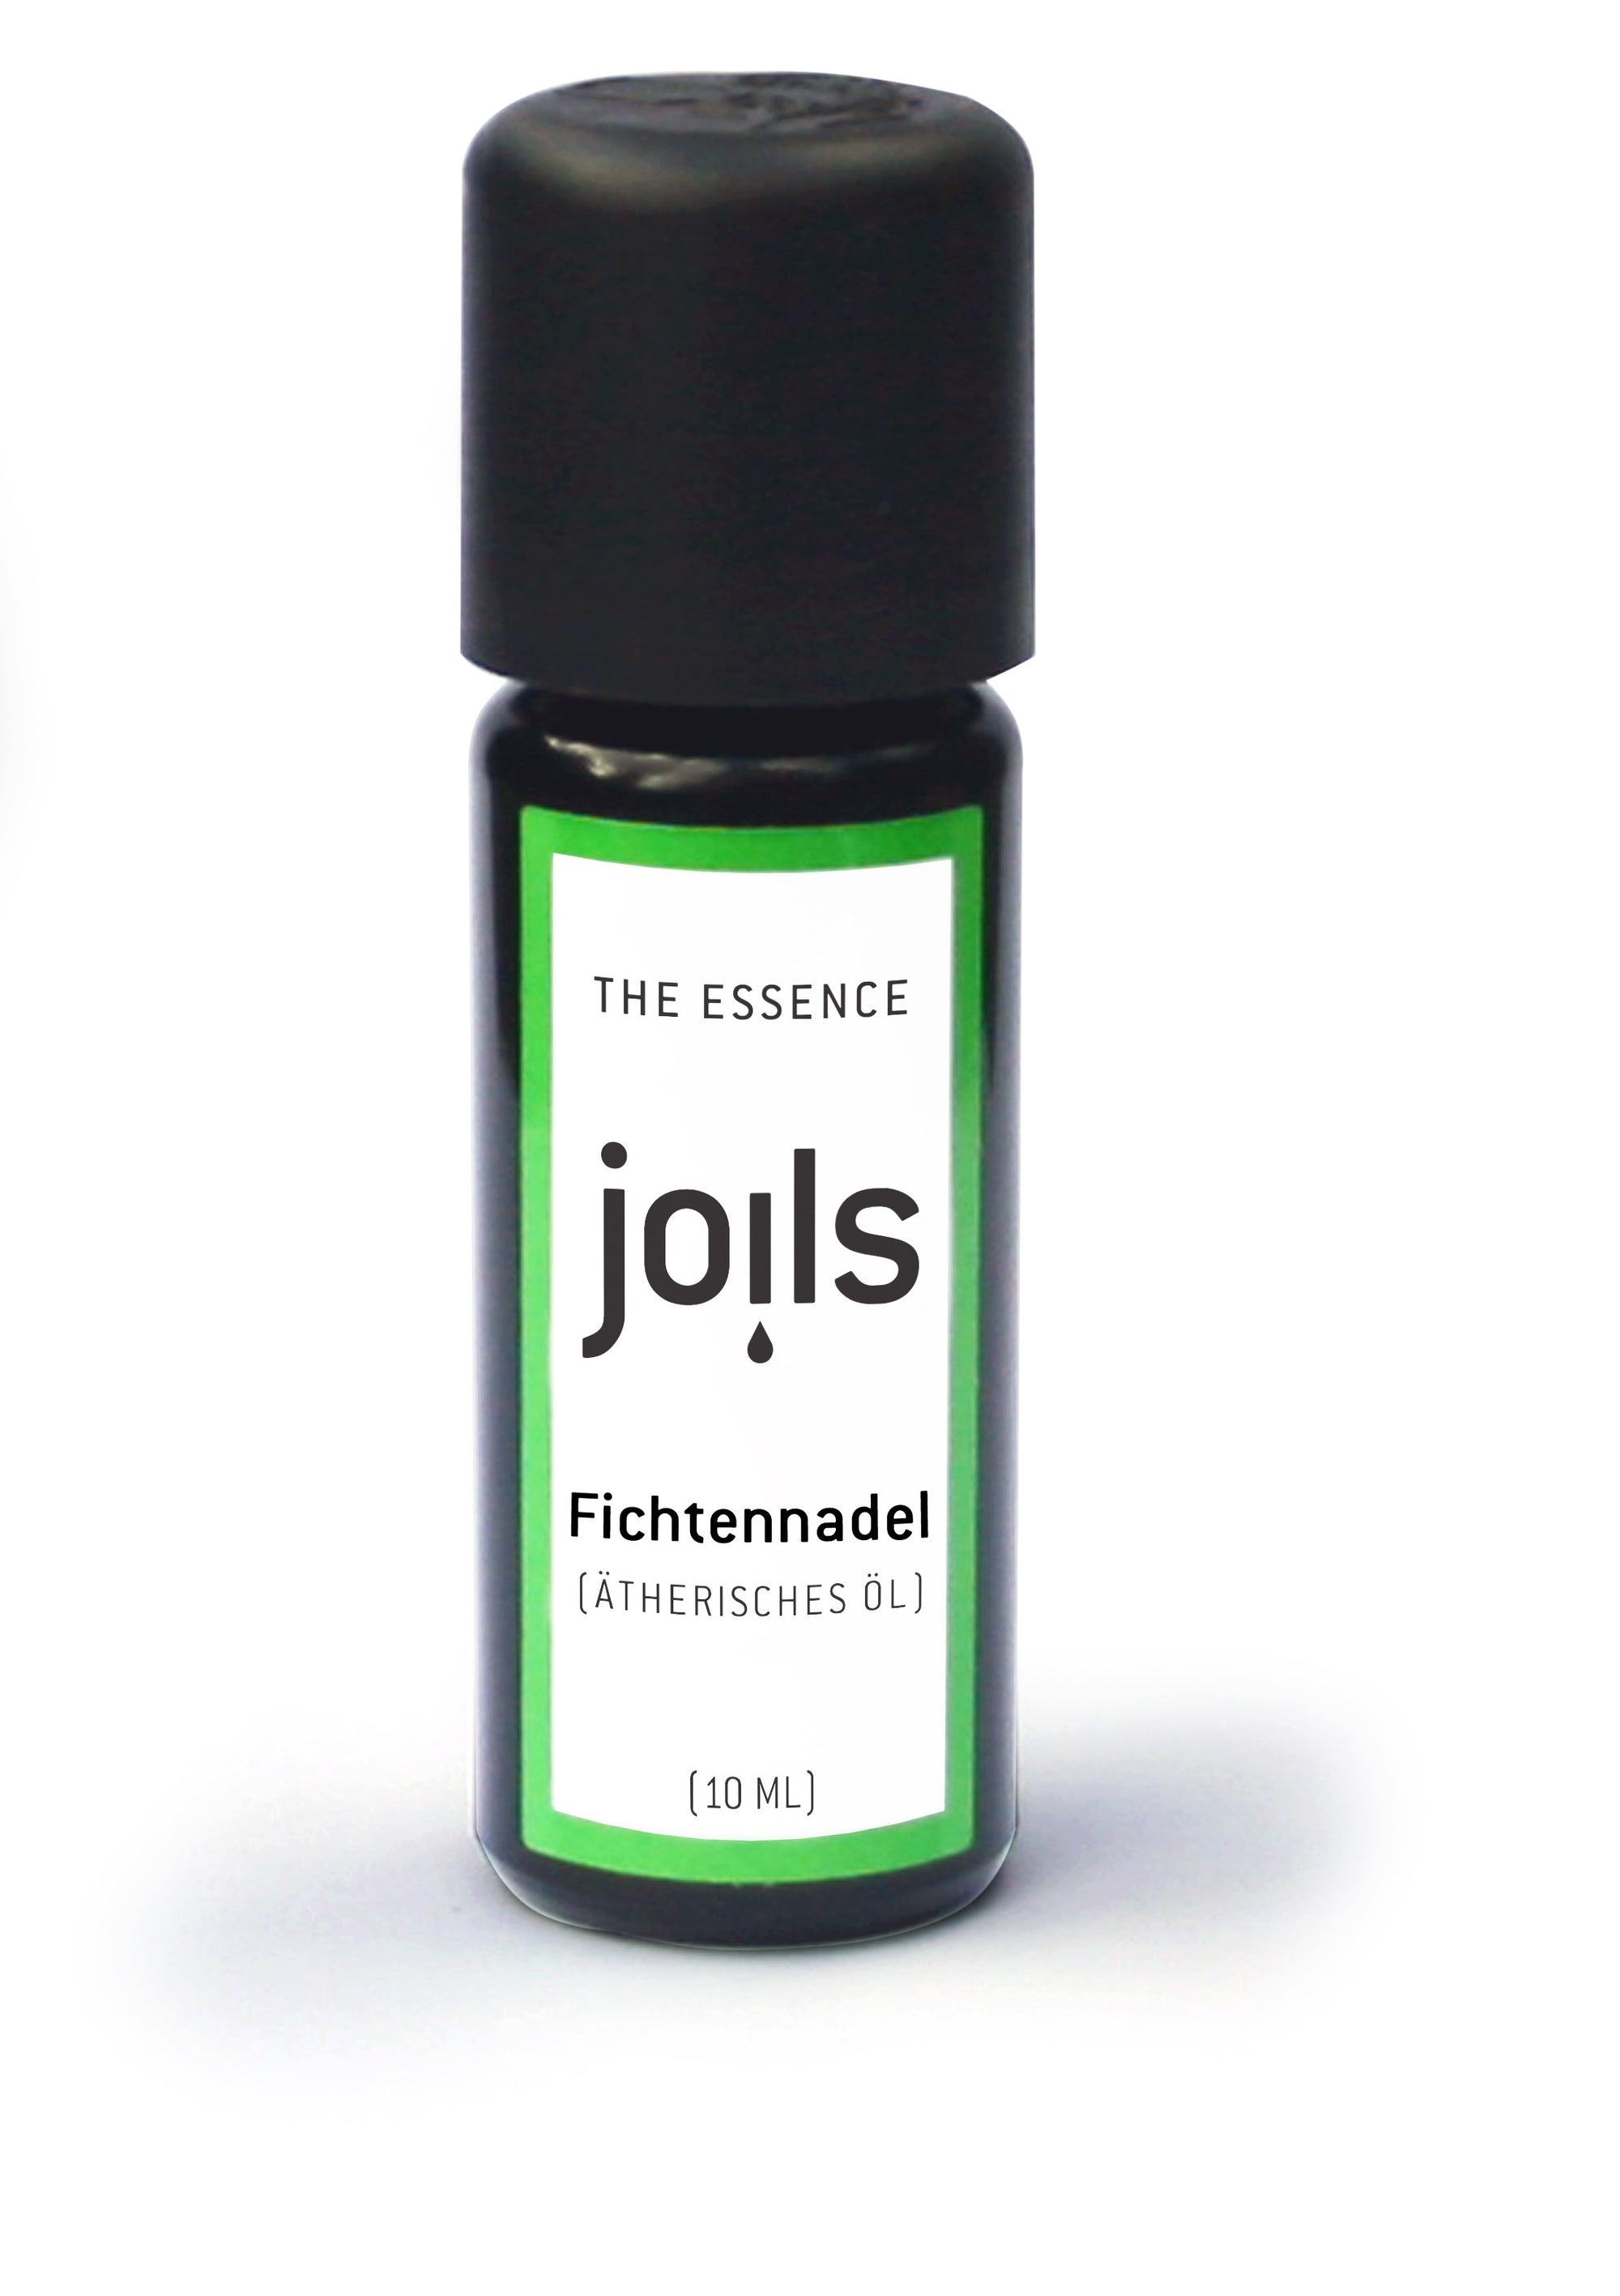 FICHTENNADEL oel aroma Joils